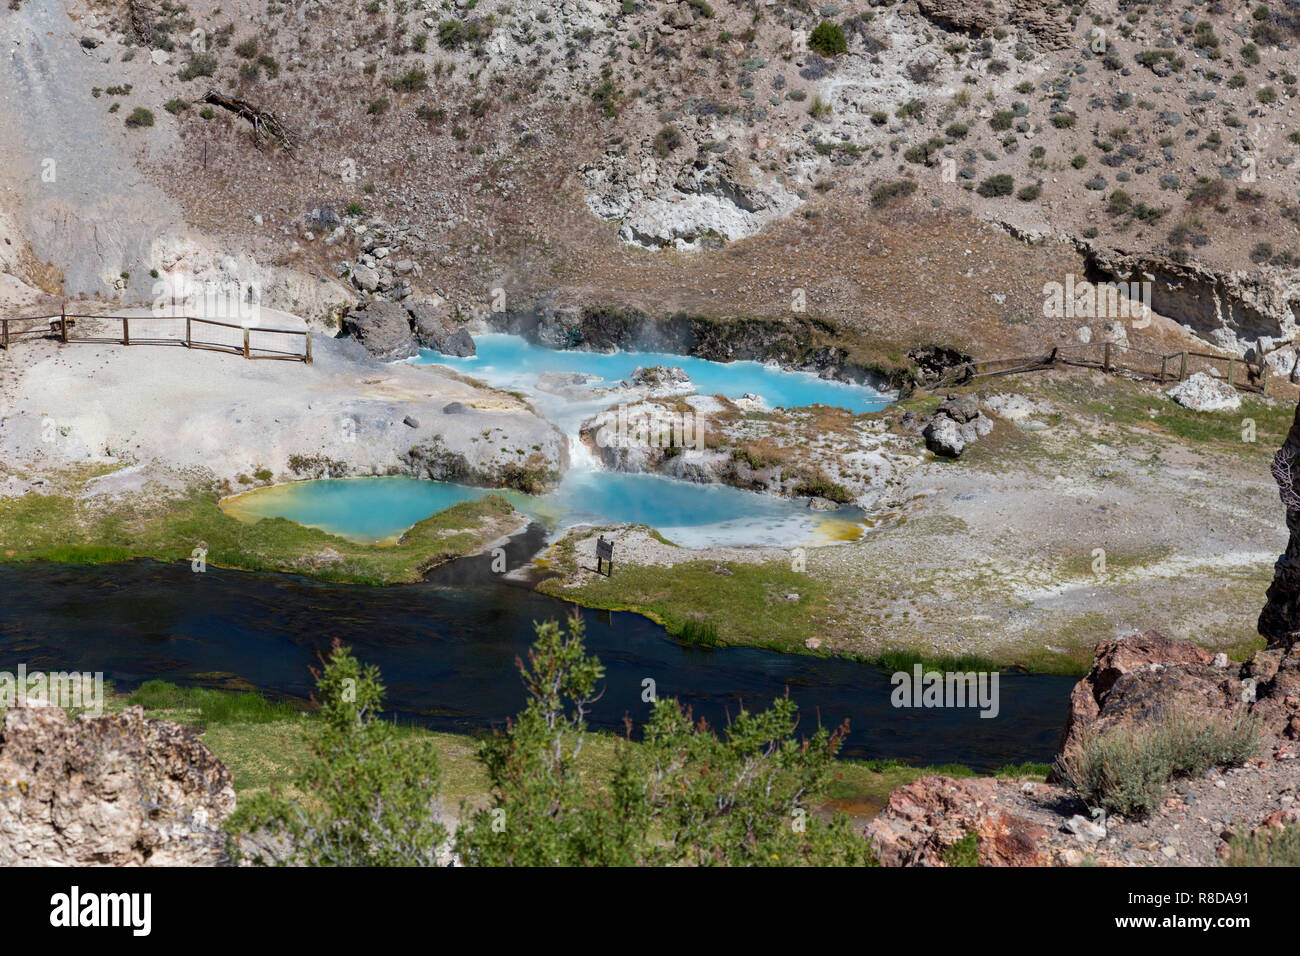 Hot Creek hat Dutzende von natürlichen heißen Quellen, blubbernden innerhalb des felsigen Wänden eines River Gorge und im Schatten der hoch aufragenden Eastern Sierra Nevada. Stockfoto